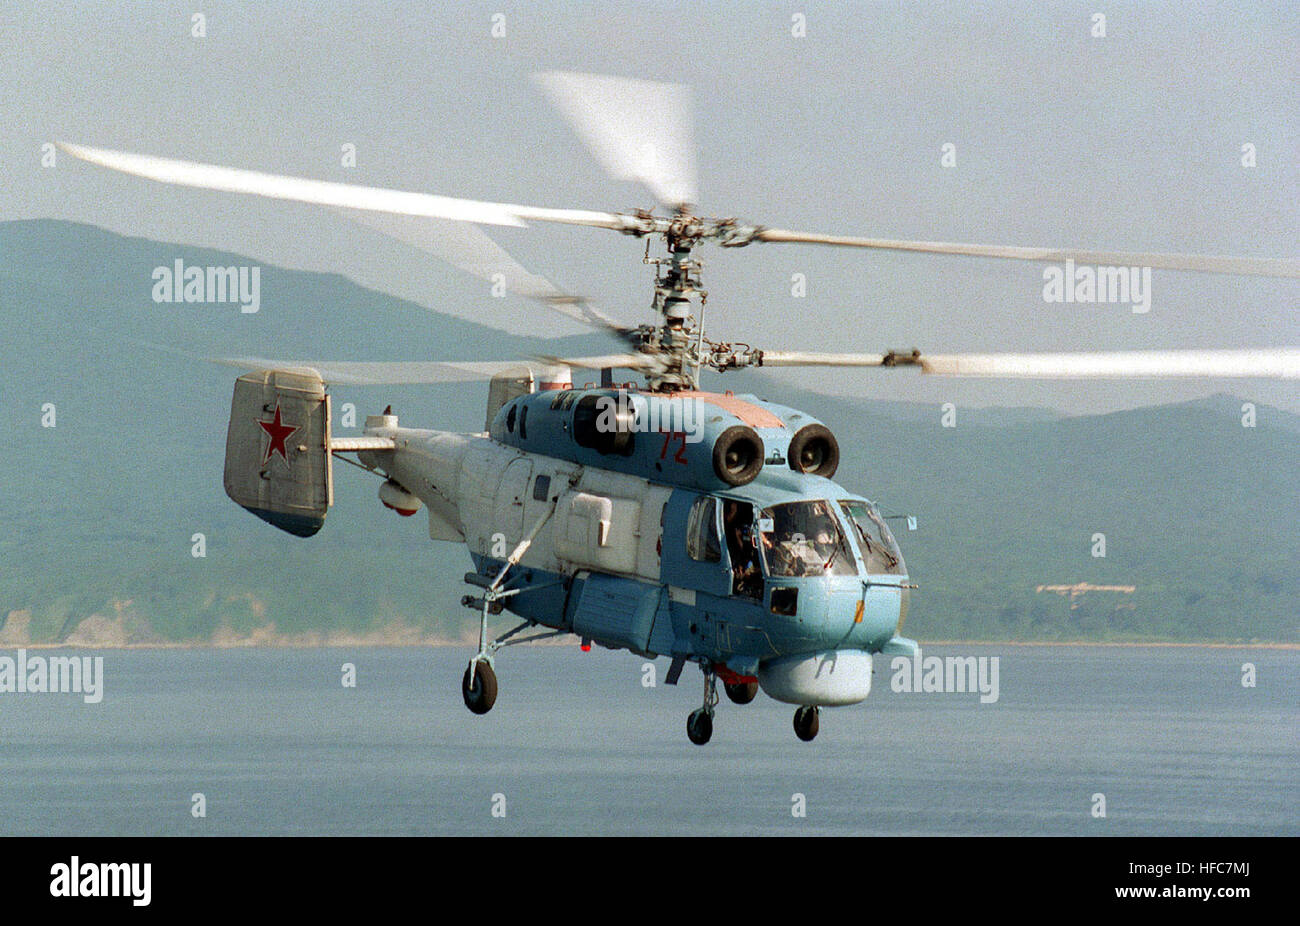 Ein russische KA-27SP (Helix D) Hubschrauber fliegt vorbei an dem Flugdeck der USS BELLEAU WOOD (LHA-3) (nicht dargestellt) zur Vorbereitung für die Landung auf dem Amphib Ious Angriff Schiff während der Übung Zusammenarbeit von THE SEA 96, vor der Küste von Wladiwostok, Russland.  Die Landung Marken Schiff zum ersten Mal, das ein russischen Hubschrauber auf einer US-Navy setzte hat, im Rahmen dieser jährlichen Übung. Kamov Ka-27PS Stockfoto